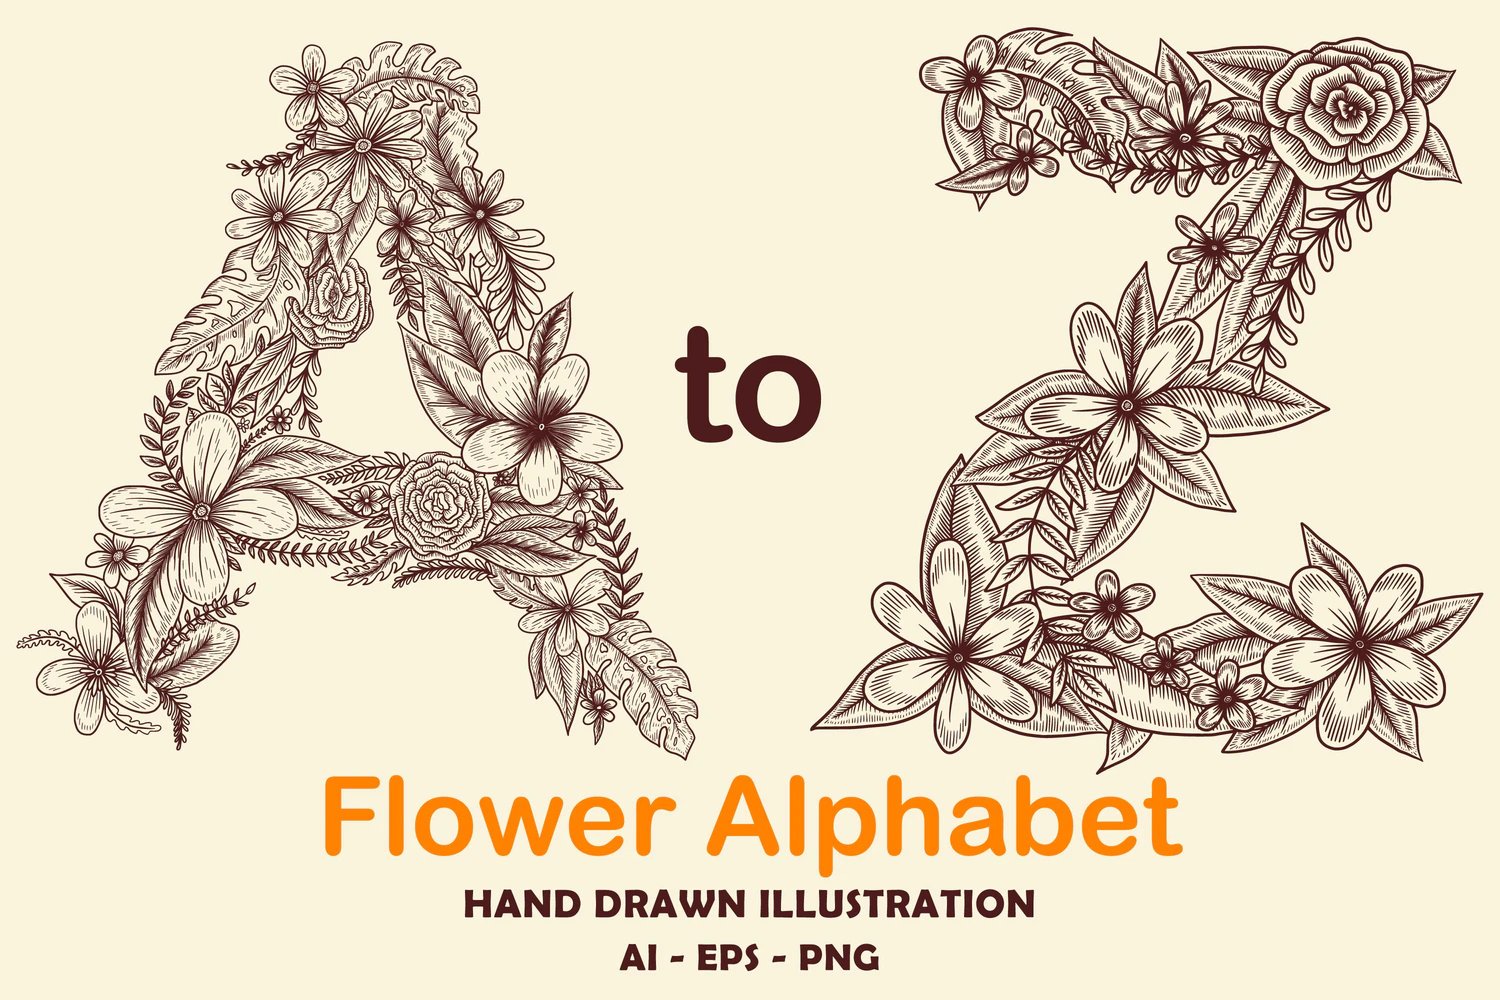 2203 复古手绘花纹字母矢量插图素材 A-Z Flower Alphabet Hand drawn Illustration